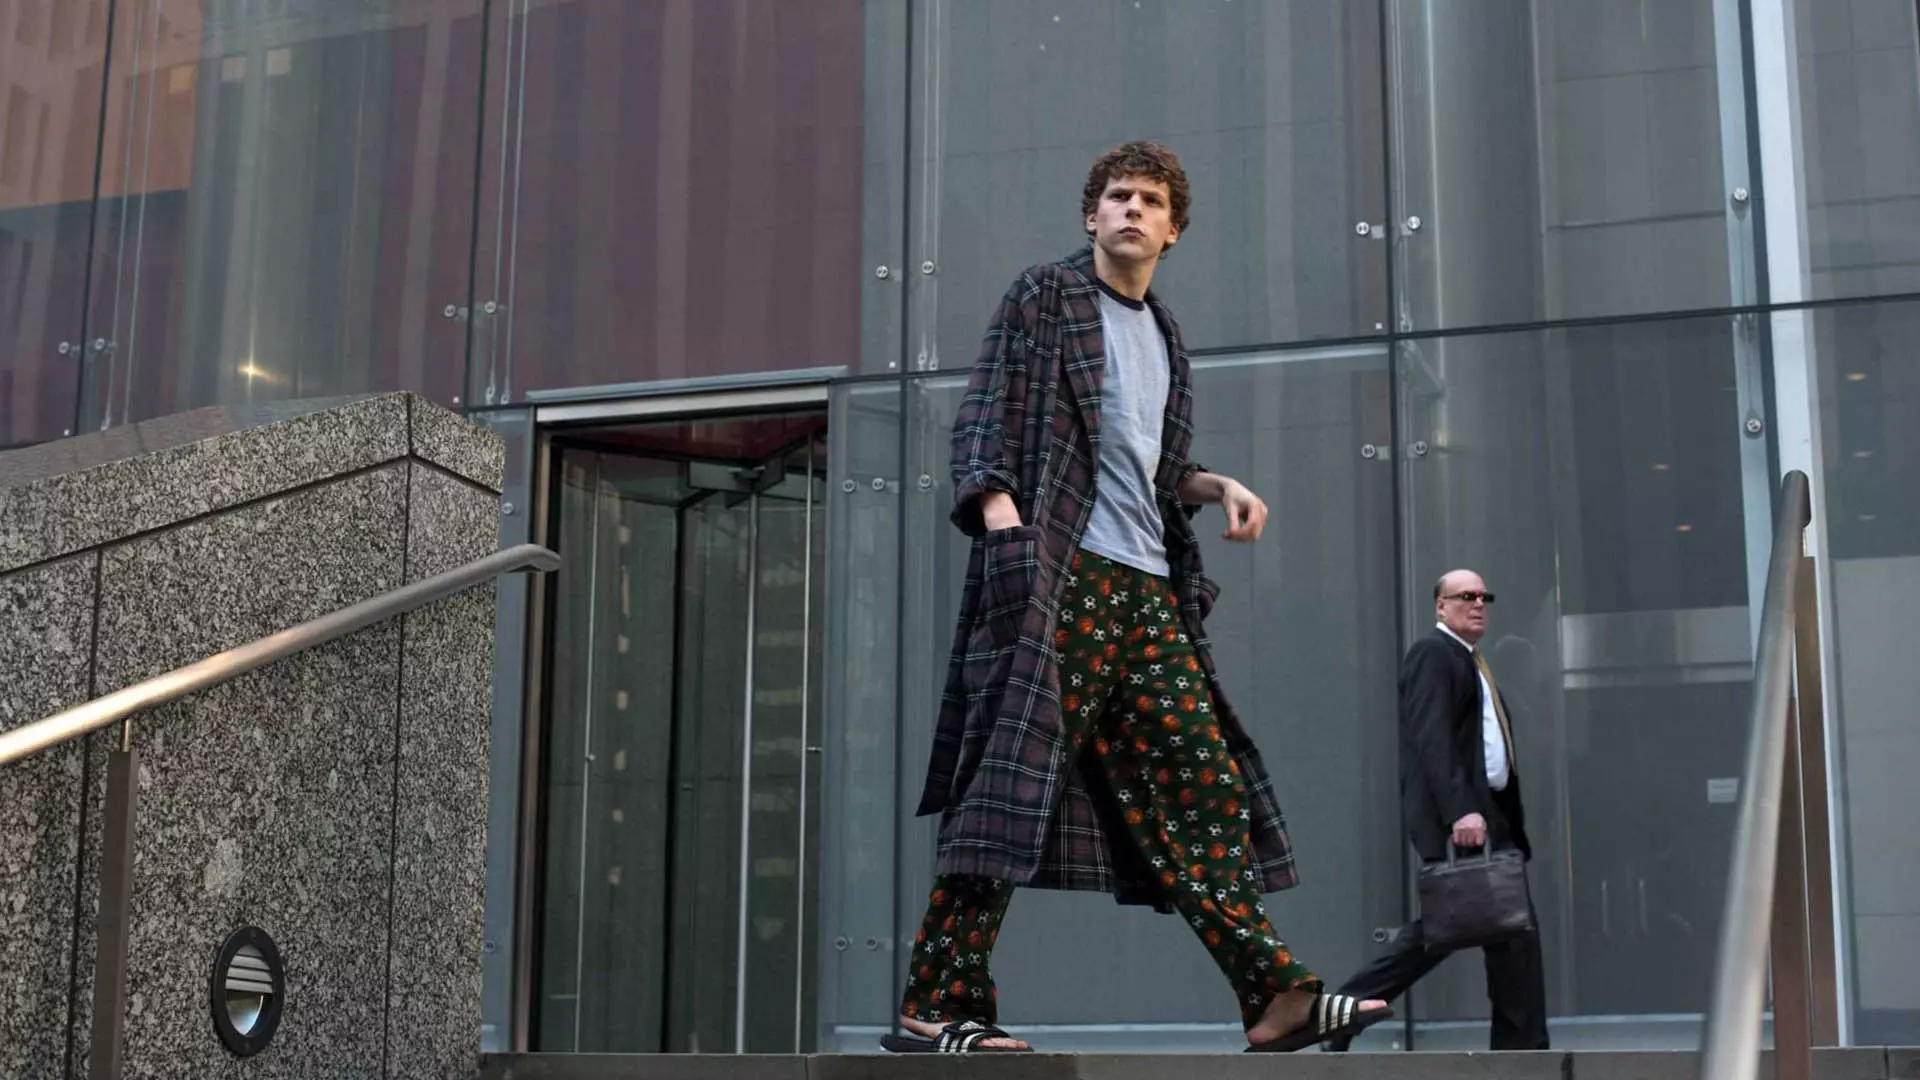 شخصیت مارک زاکربرگ با دمپایی و لباس راحت در خیابان در فیلم The Social Network